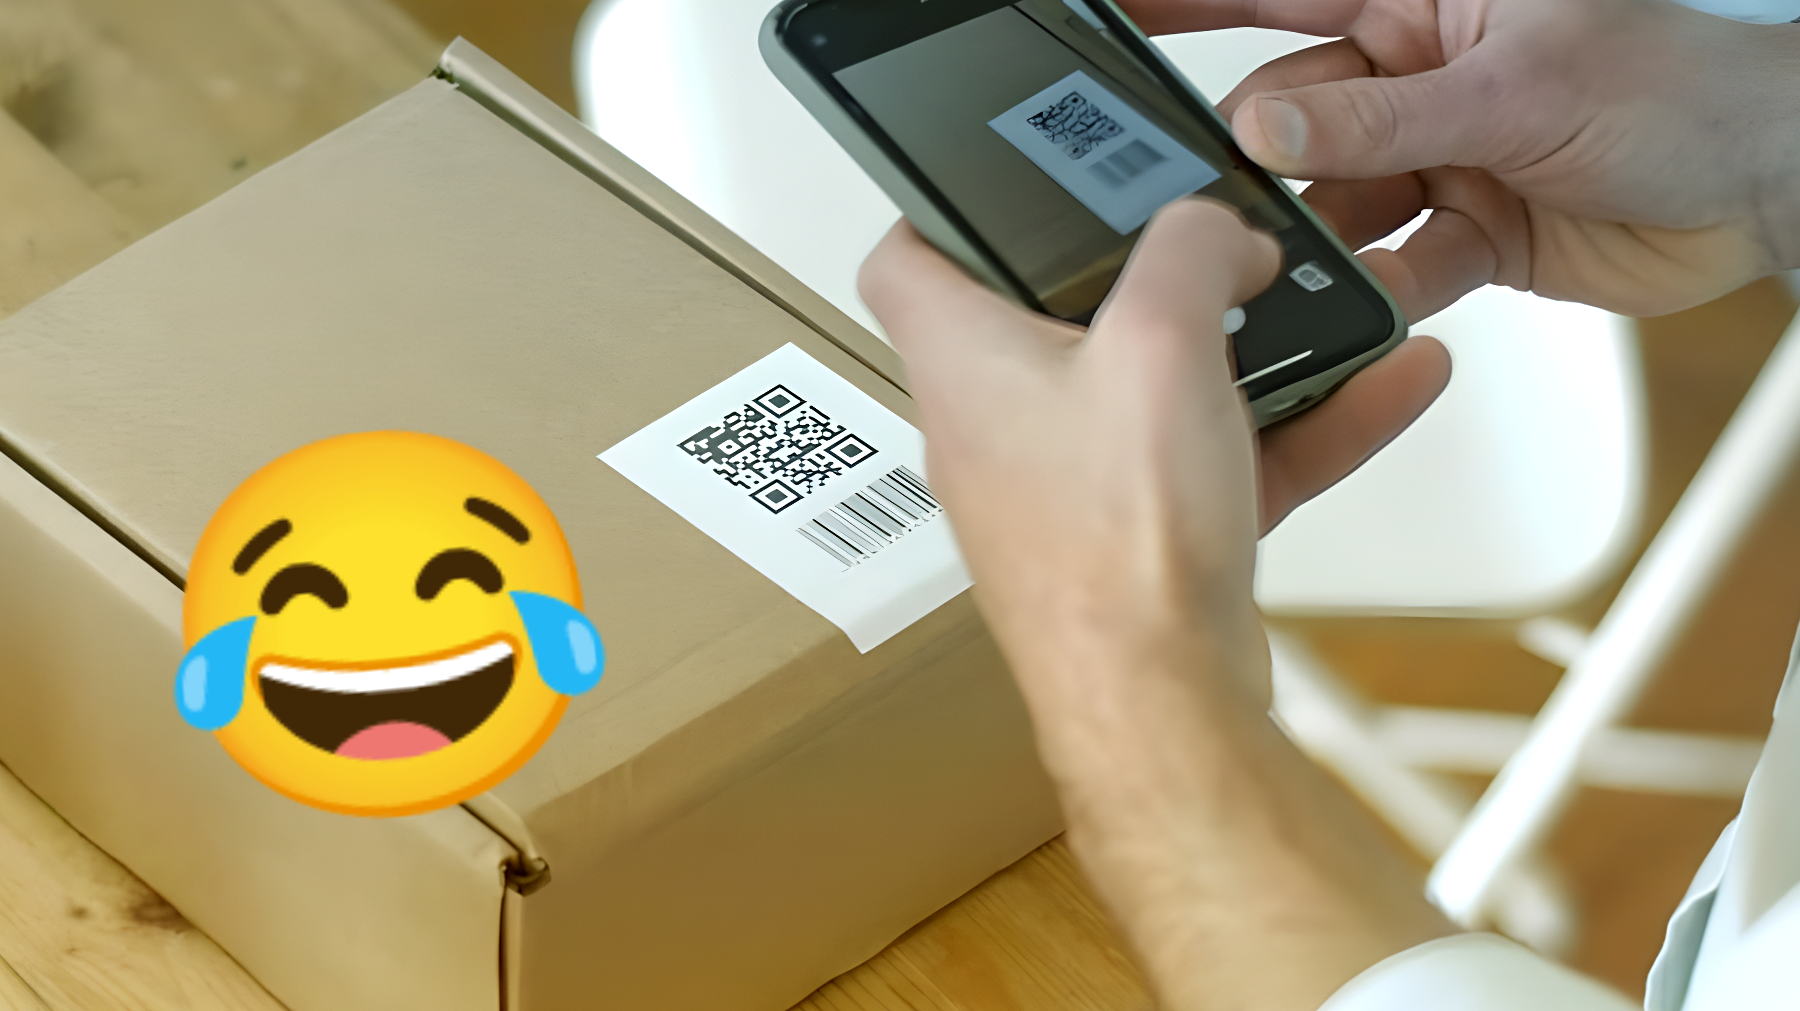 El vídeo que desató una ola de risas en internet: "La insólita prueba de que mi paquete nunca llegó"